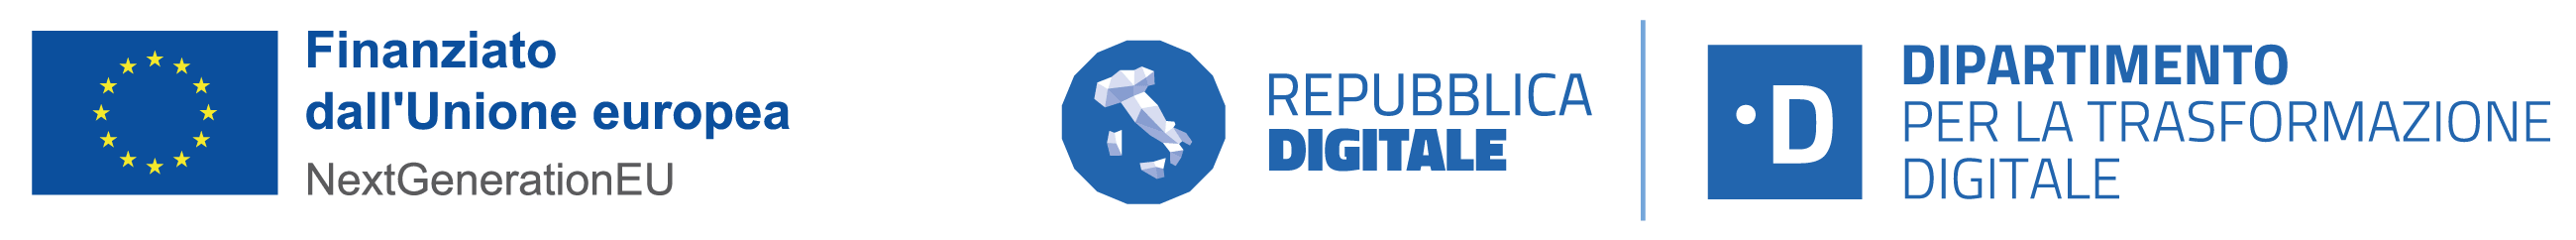 Dipartimento trasformazione digitale | Finanziato Unione Europea | Repubblica digitale